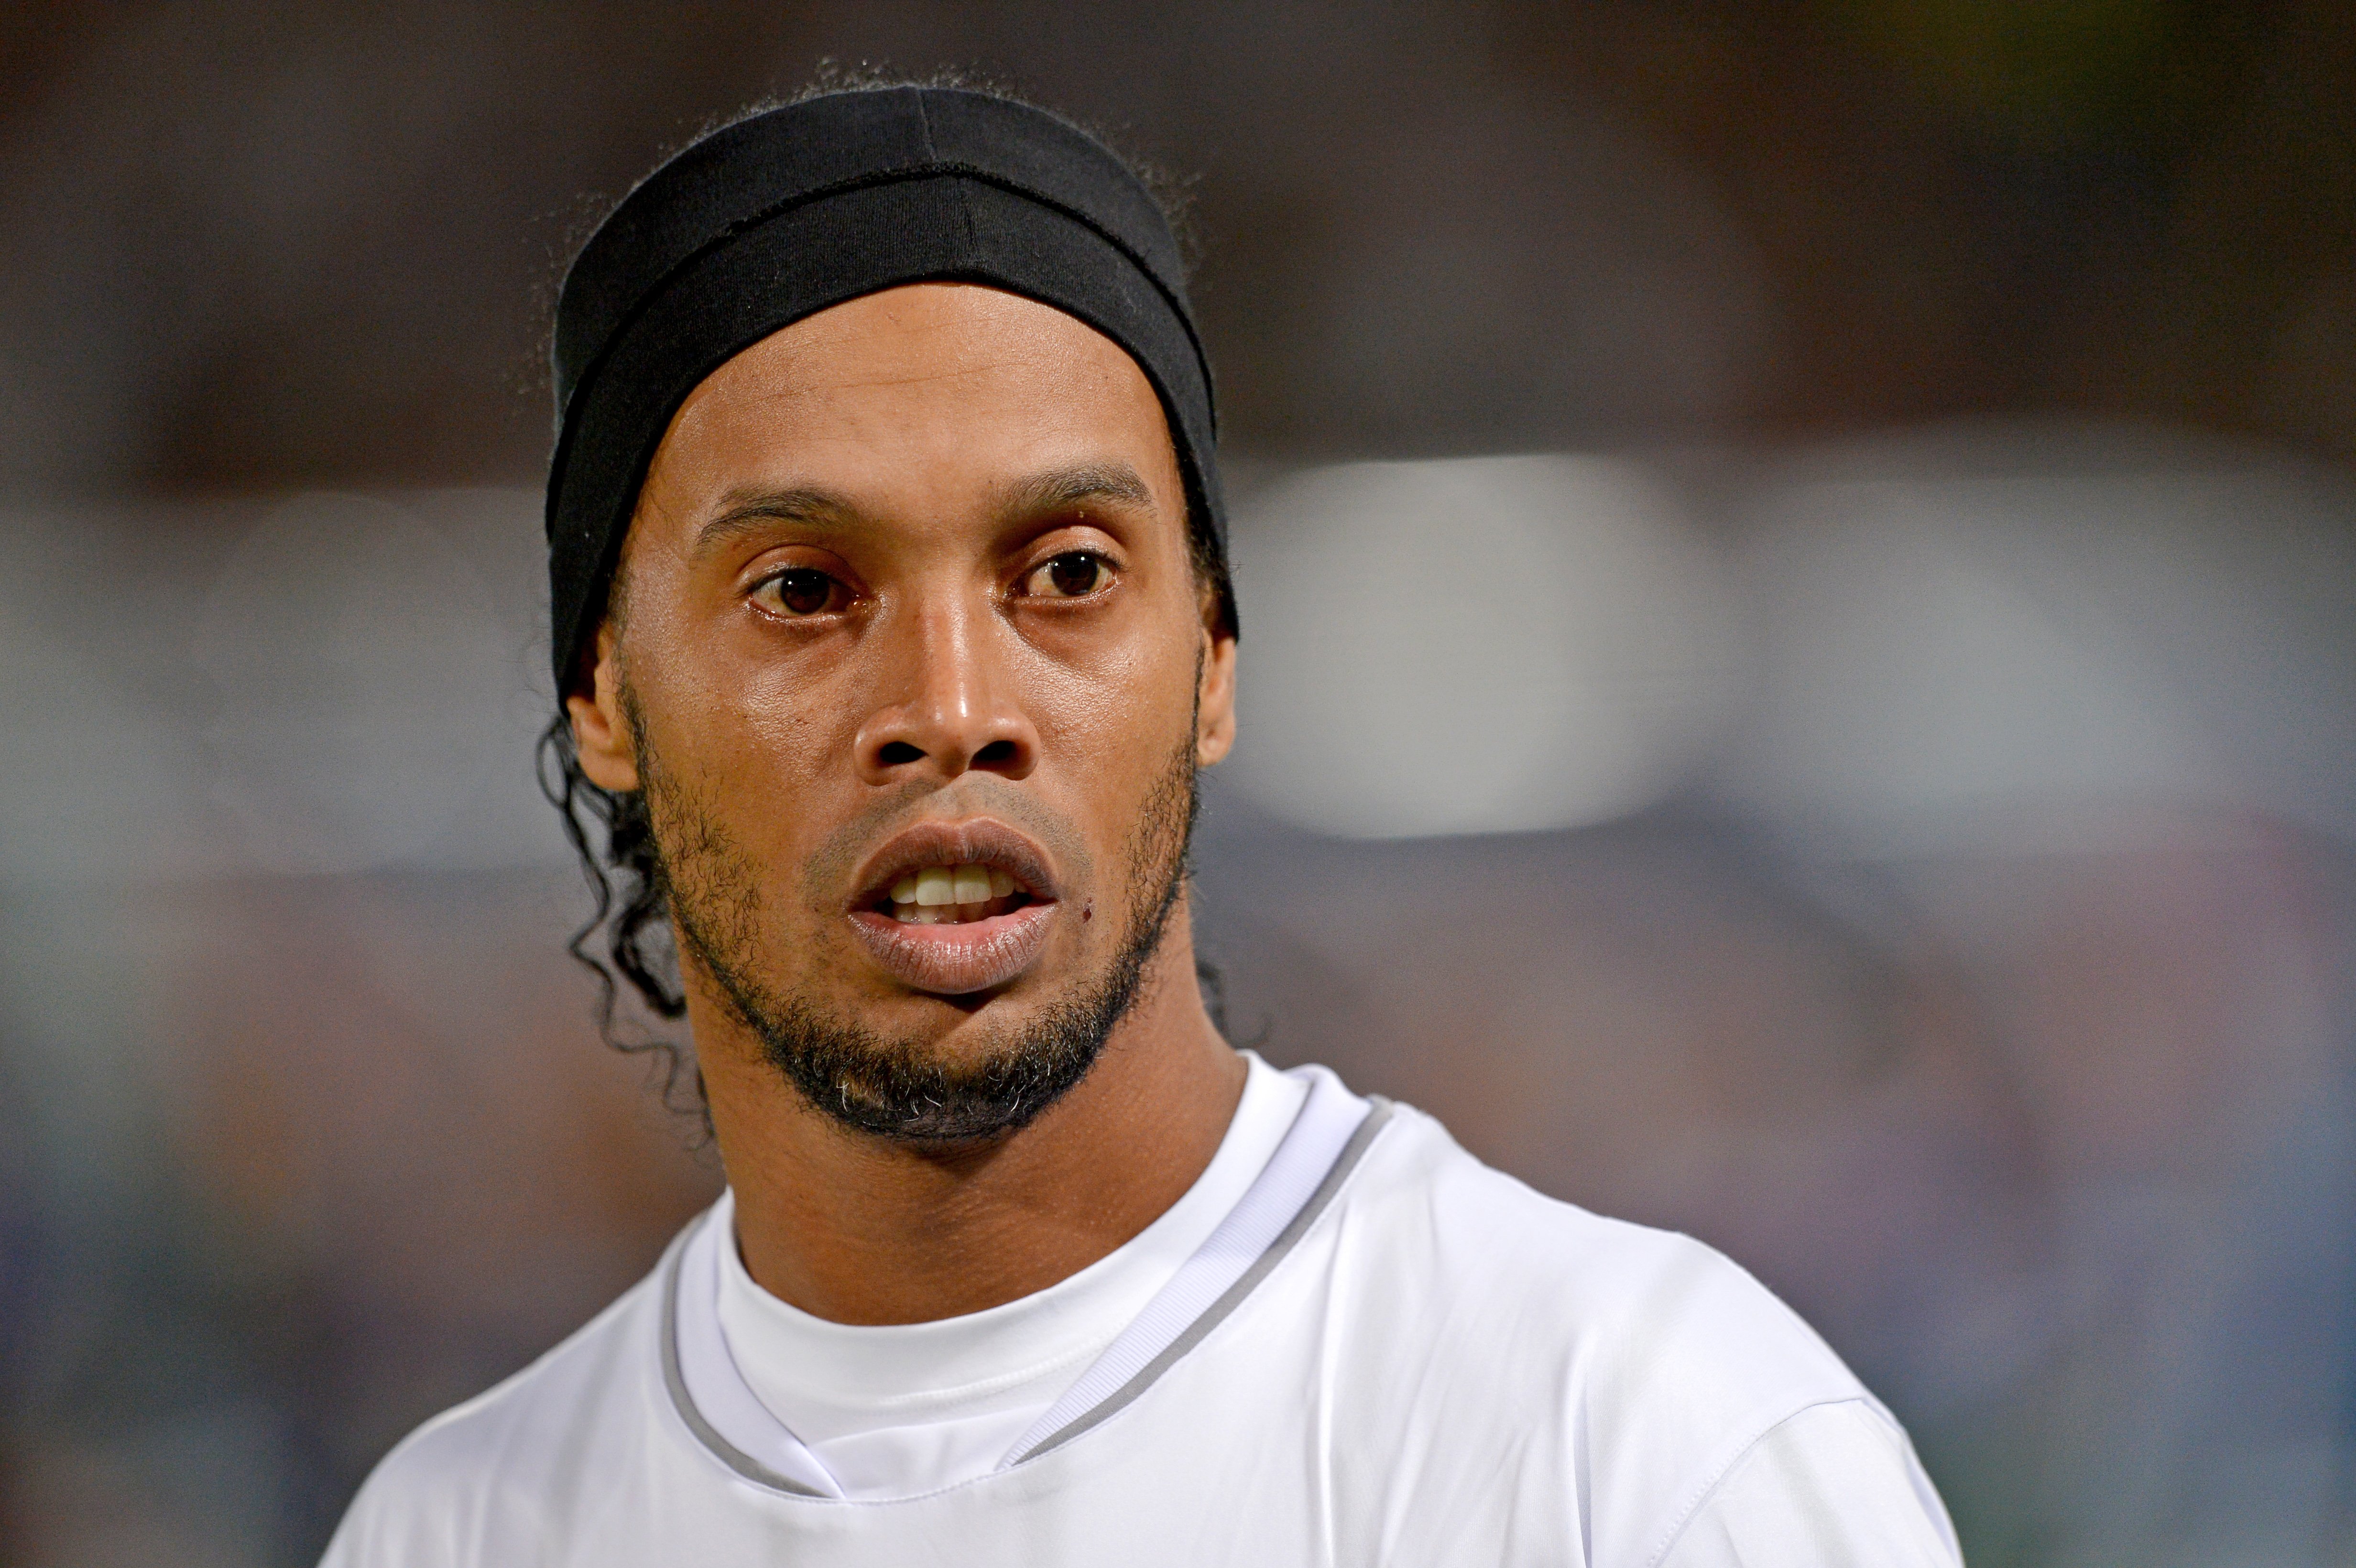 El Ronaldinho de 2003 de Joan Laporta no serà Haaland, hi ha una altra estrella a punt: així prepara la revolució